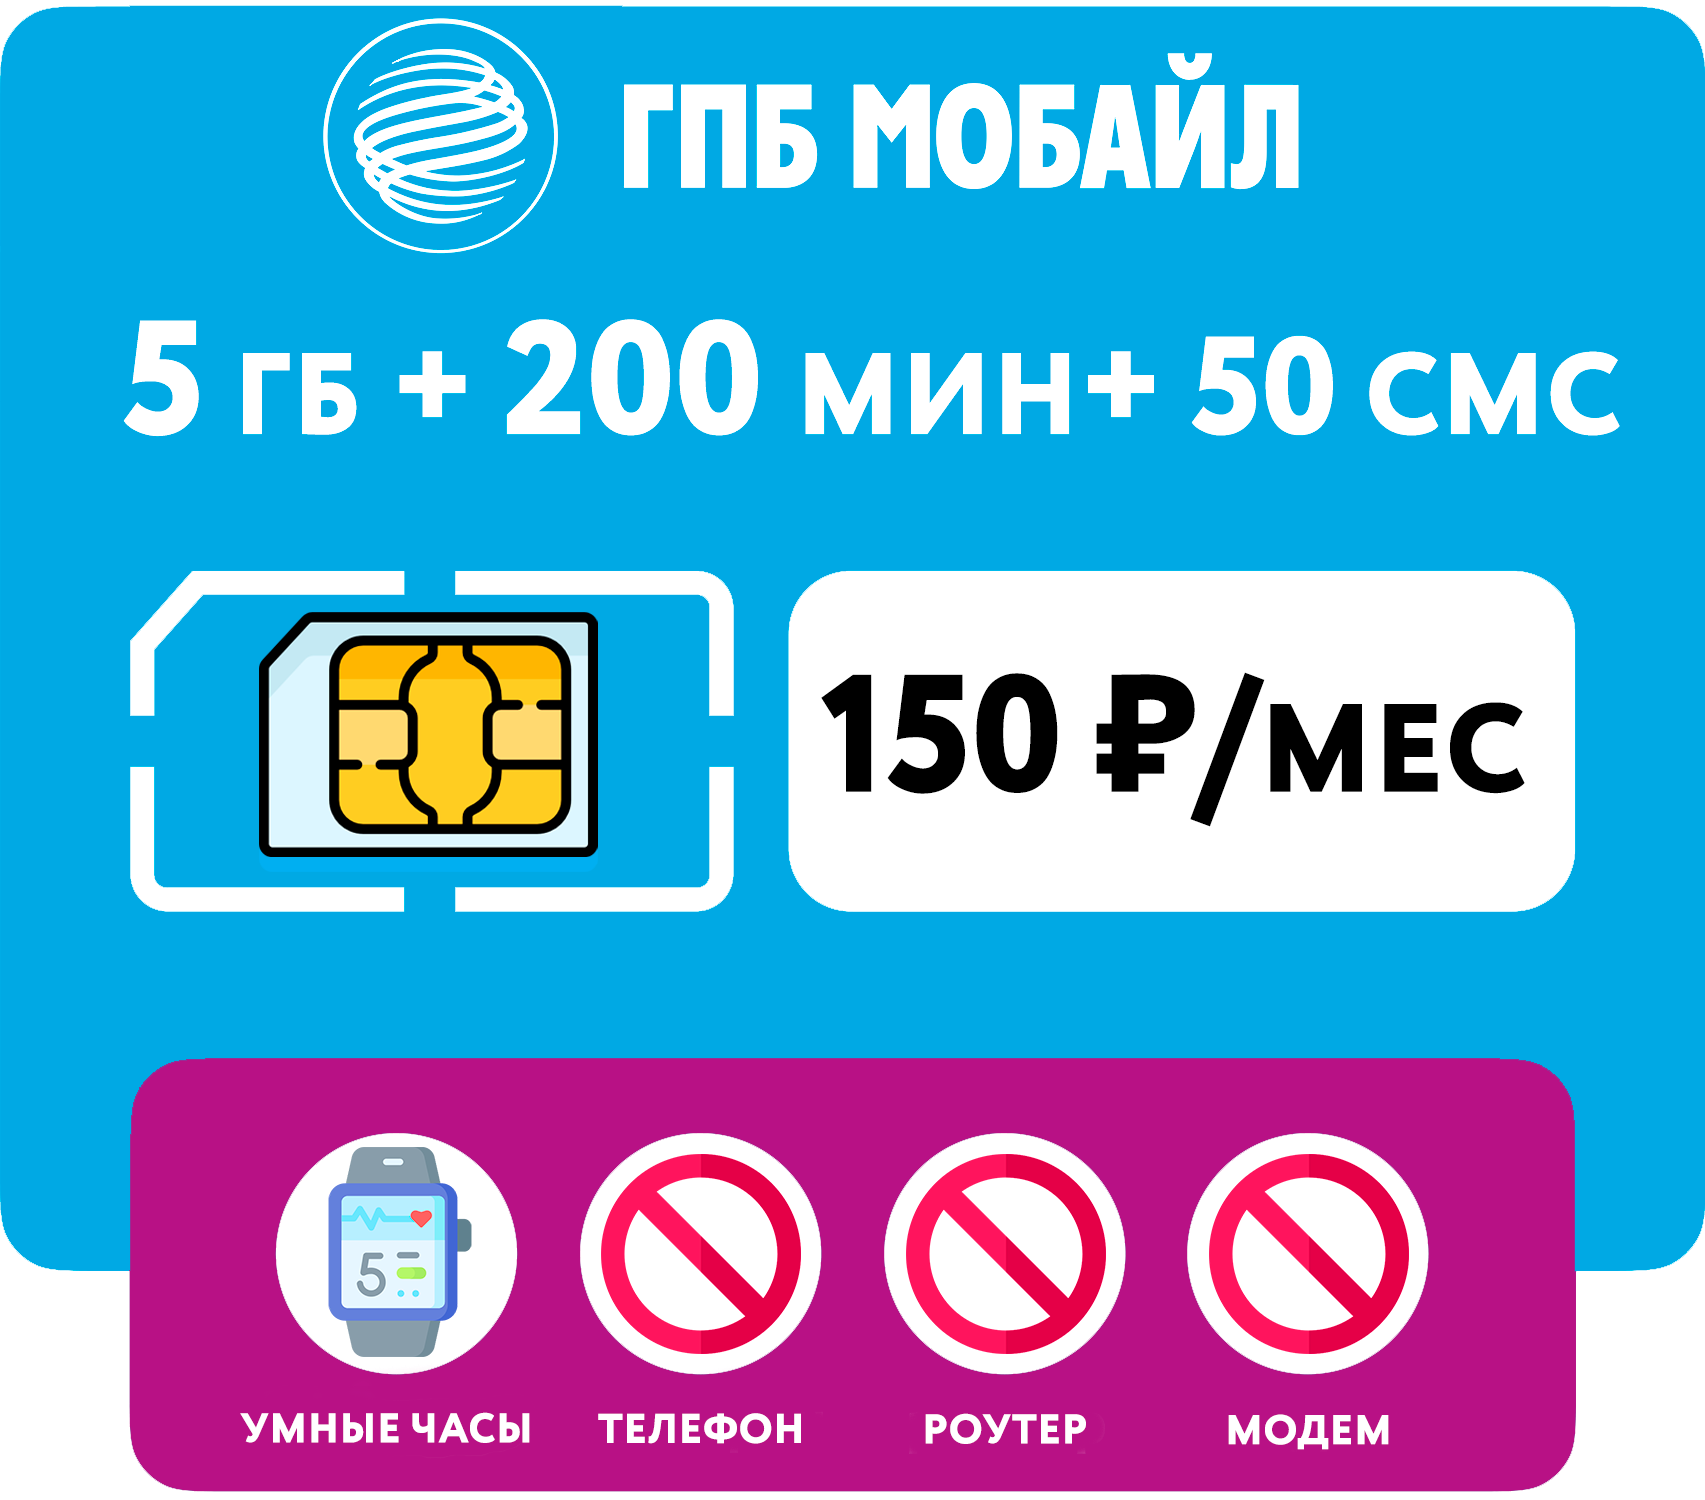 SIM-карта 5 гб интернета 200 мин 50с за 150 руб/мес для умных часов (Москва Московская область Россия)